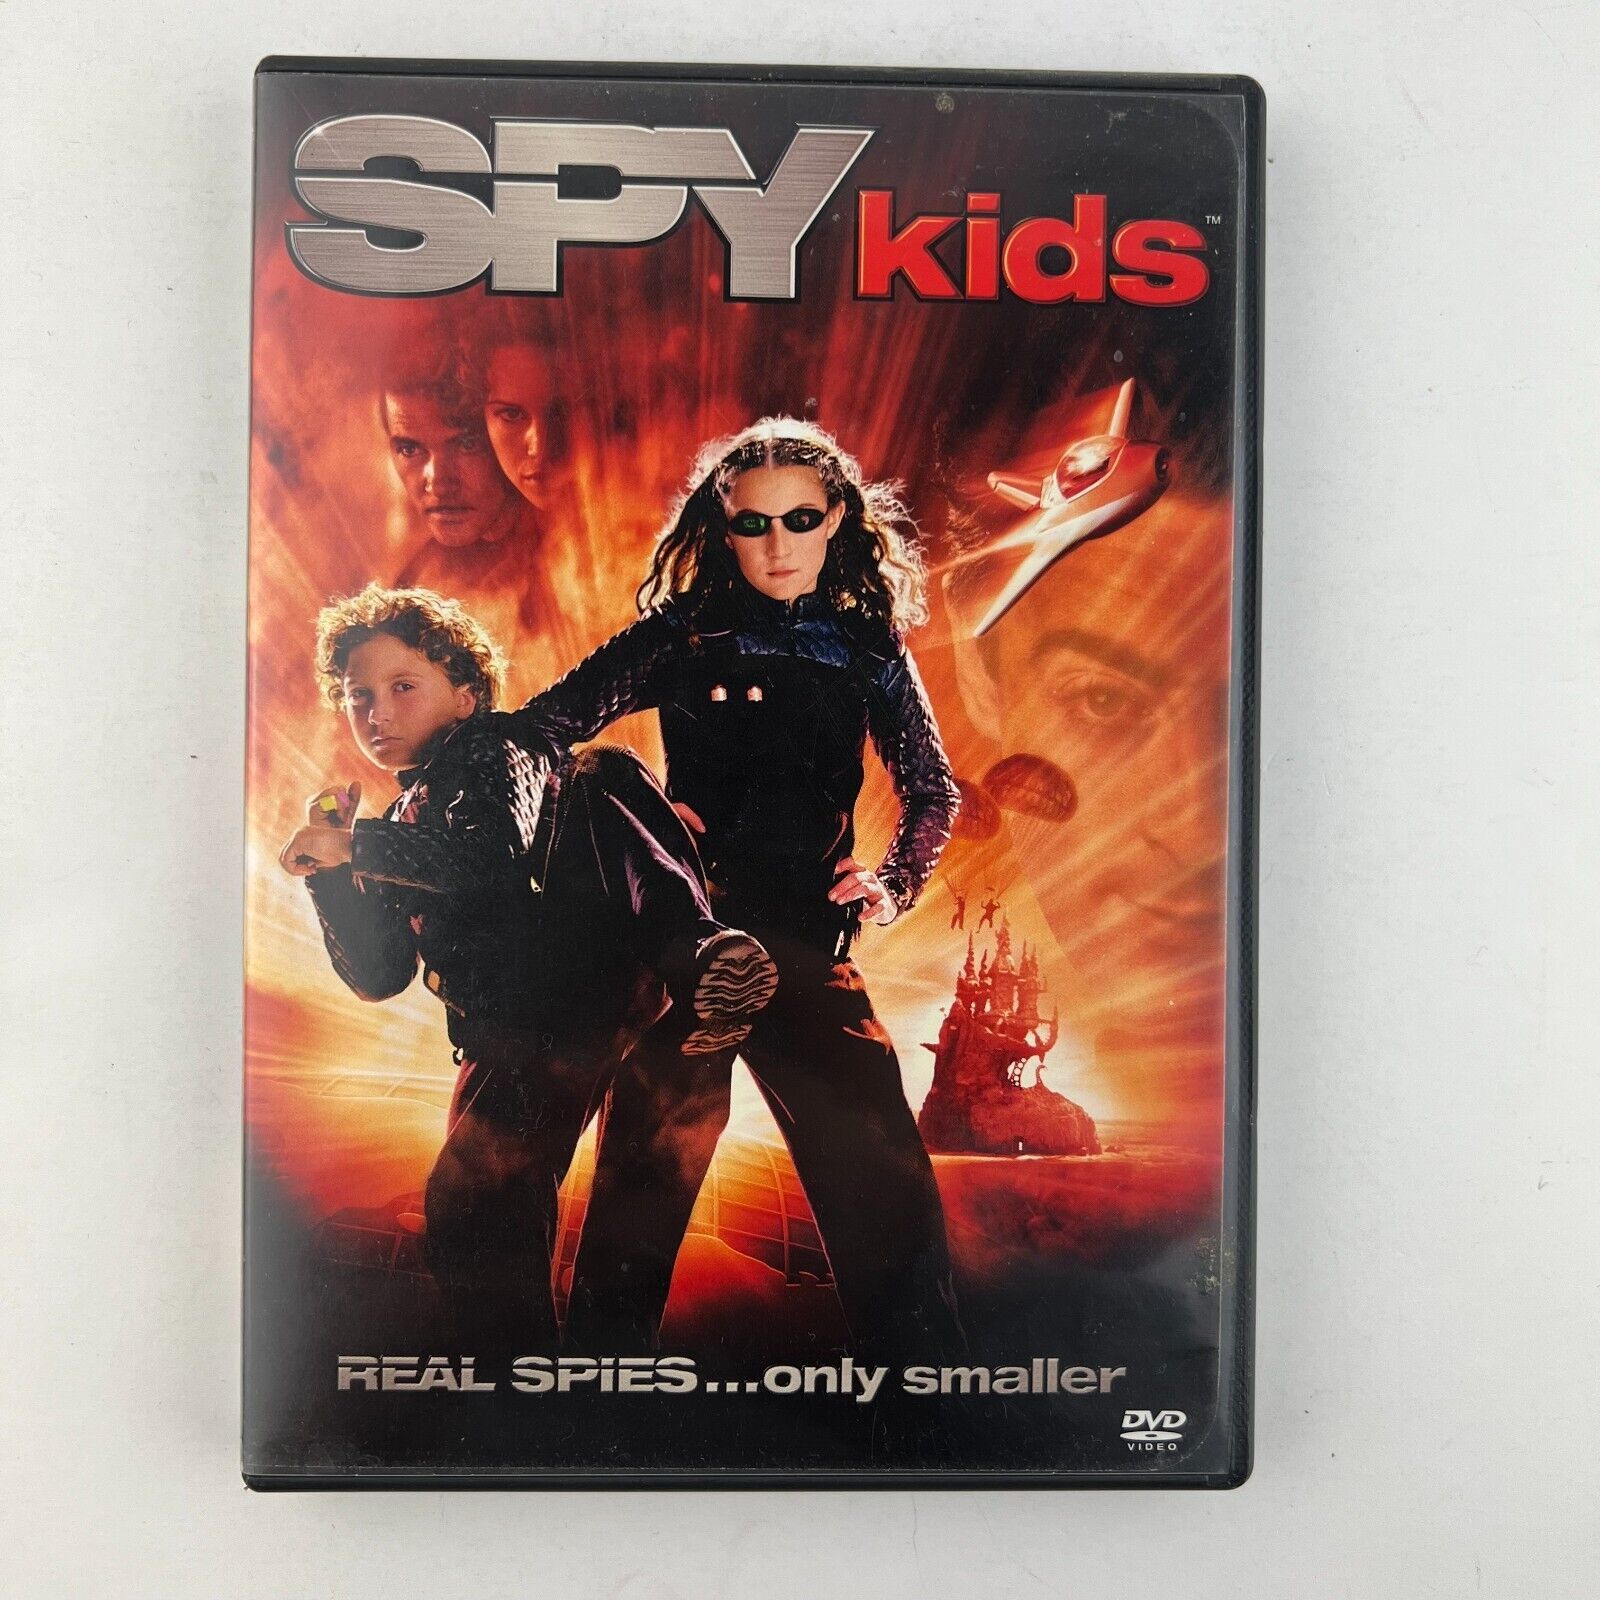 Primary image for Spy Kids DVD Alexa Vega, Antonio Banderas, Carla Gugino